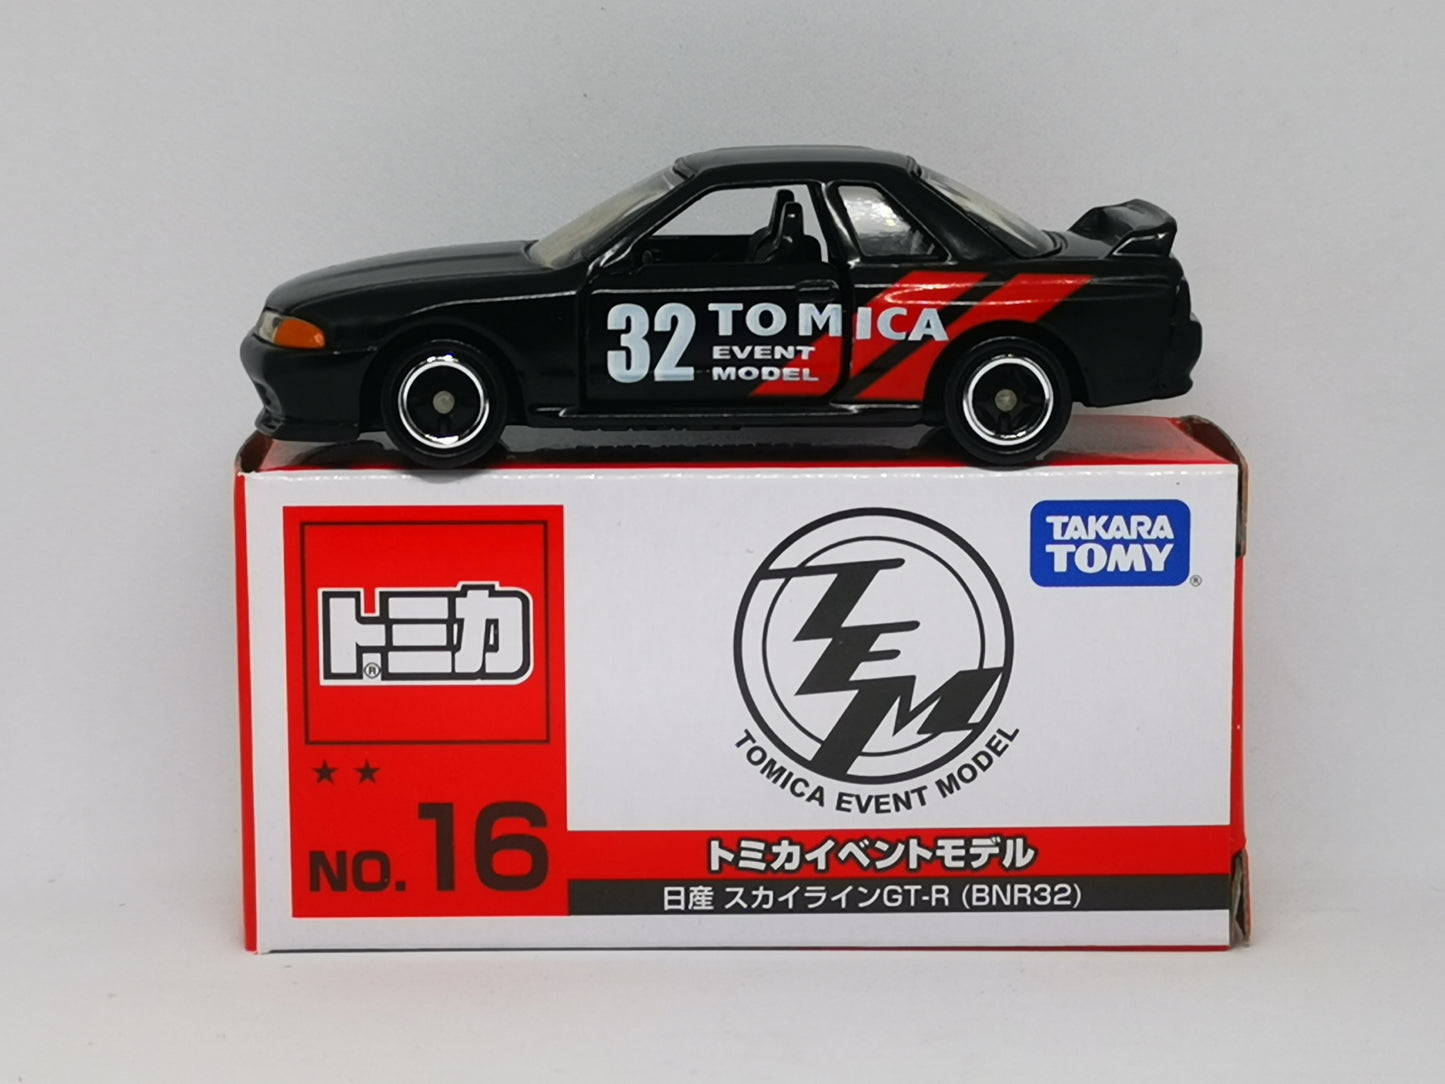 Tomica Event Model #16 Nissan Skyline GT-R R32